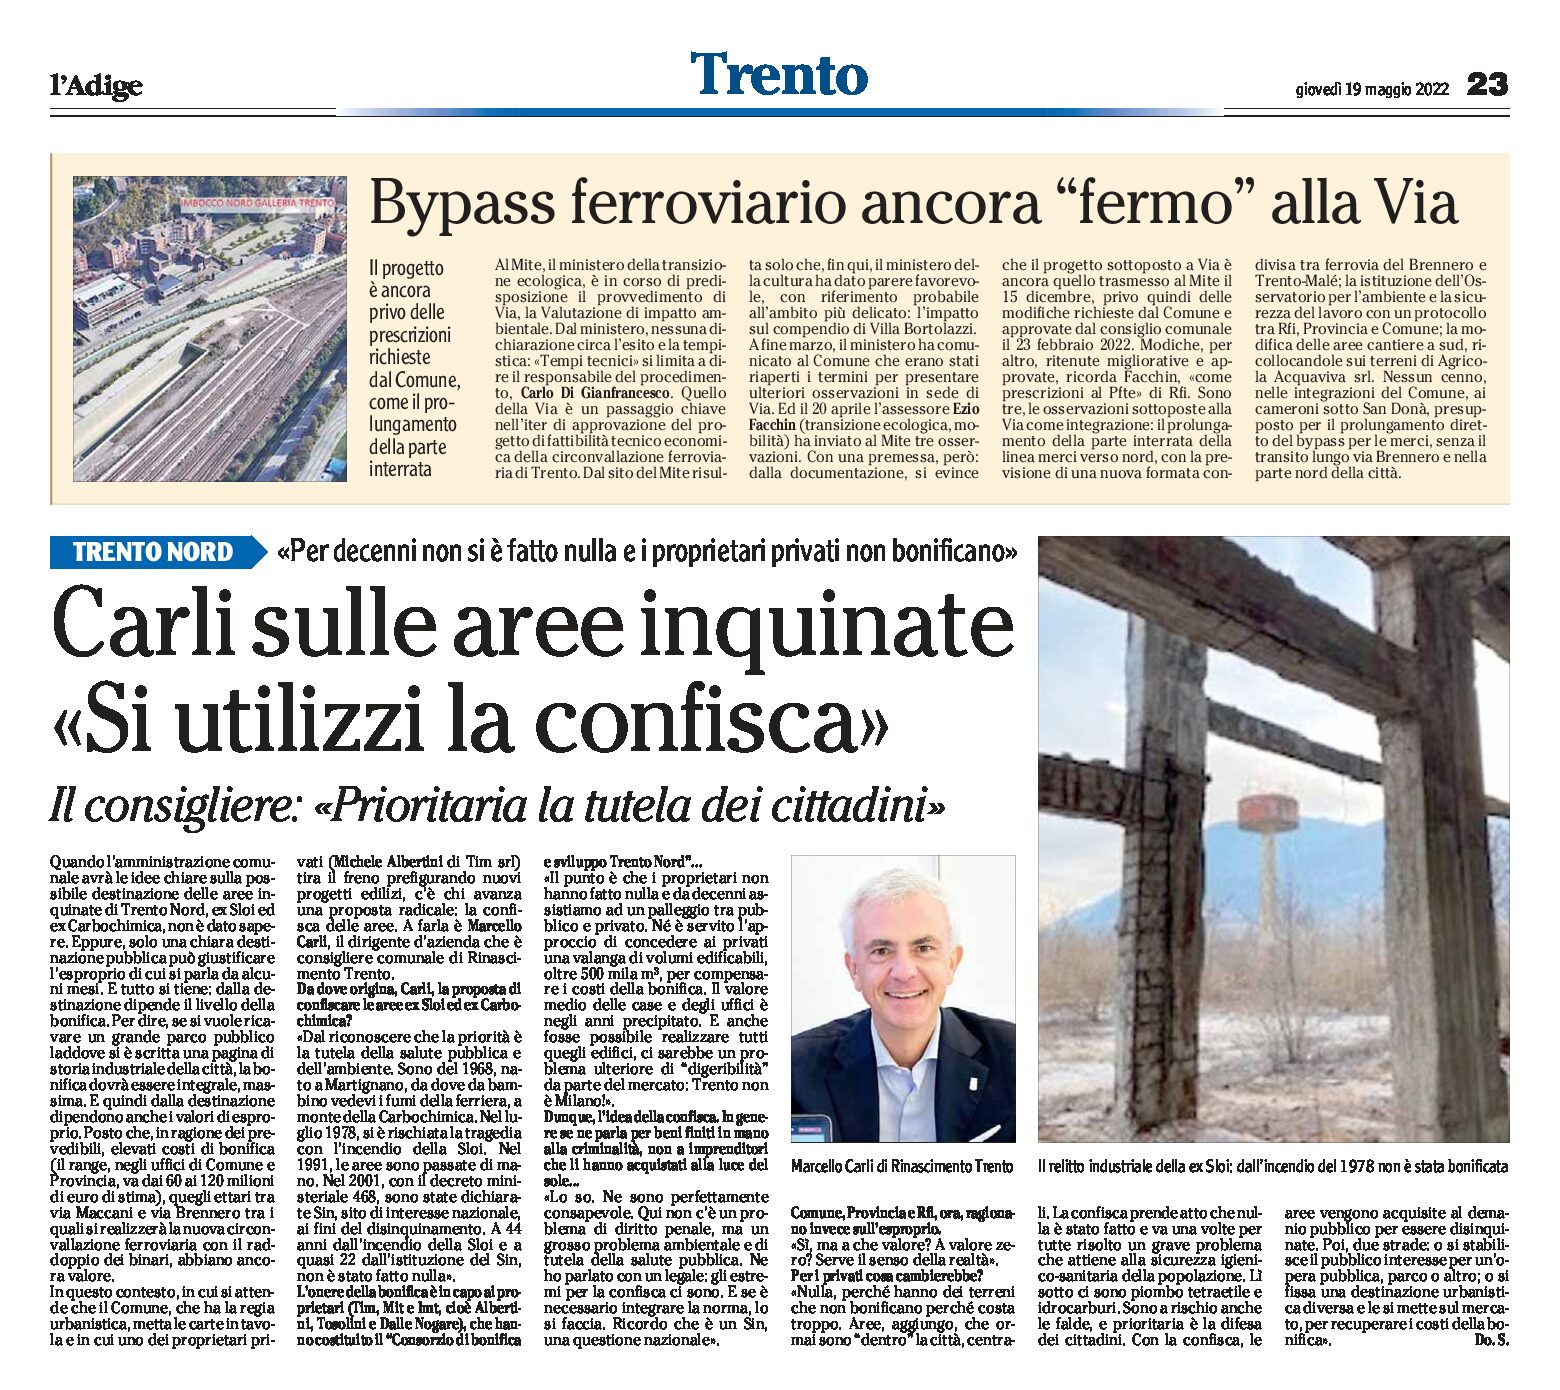 Trento, Carli: confisca delle aree inquinate